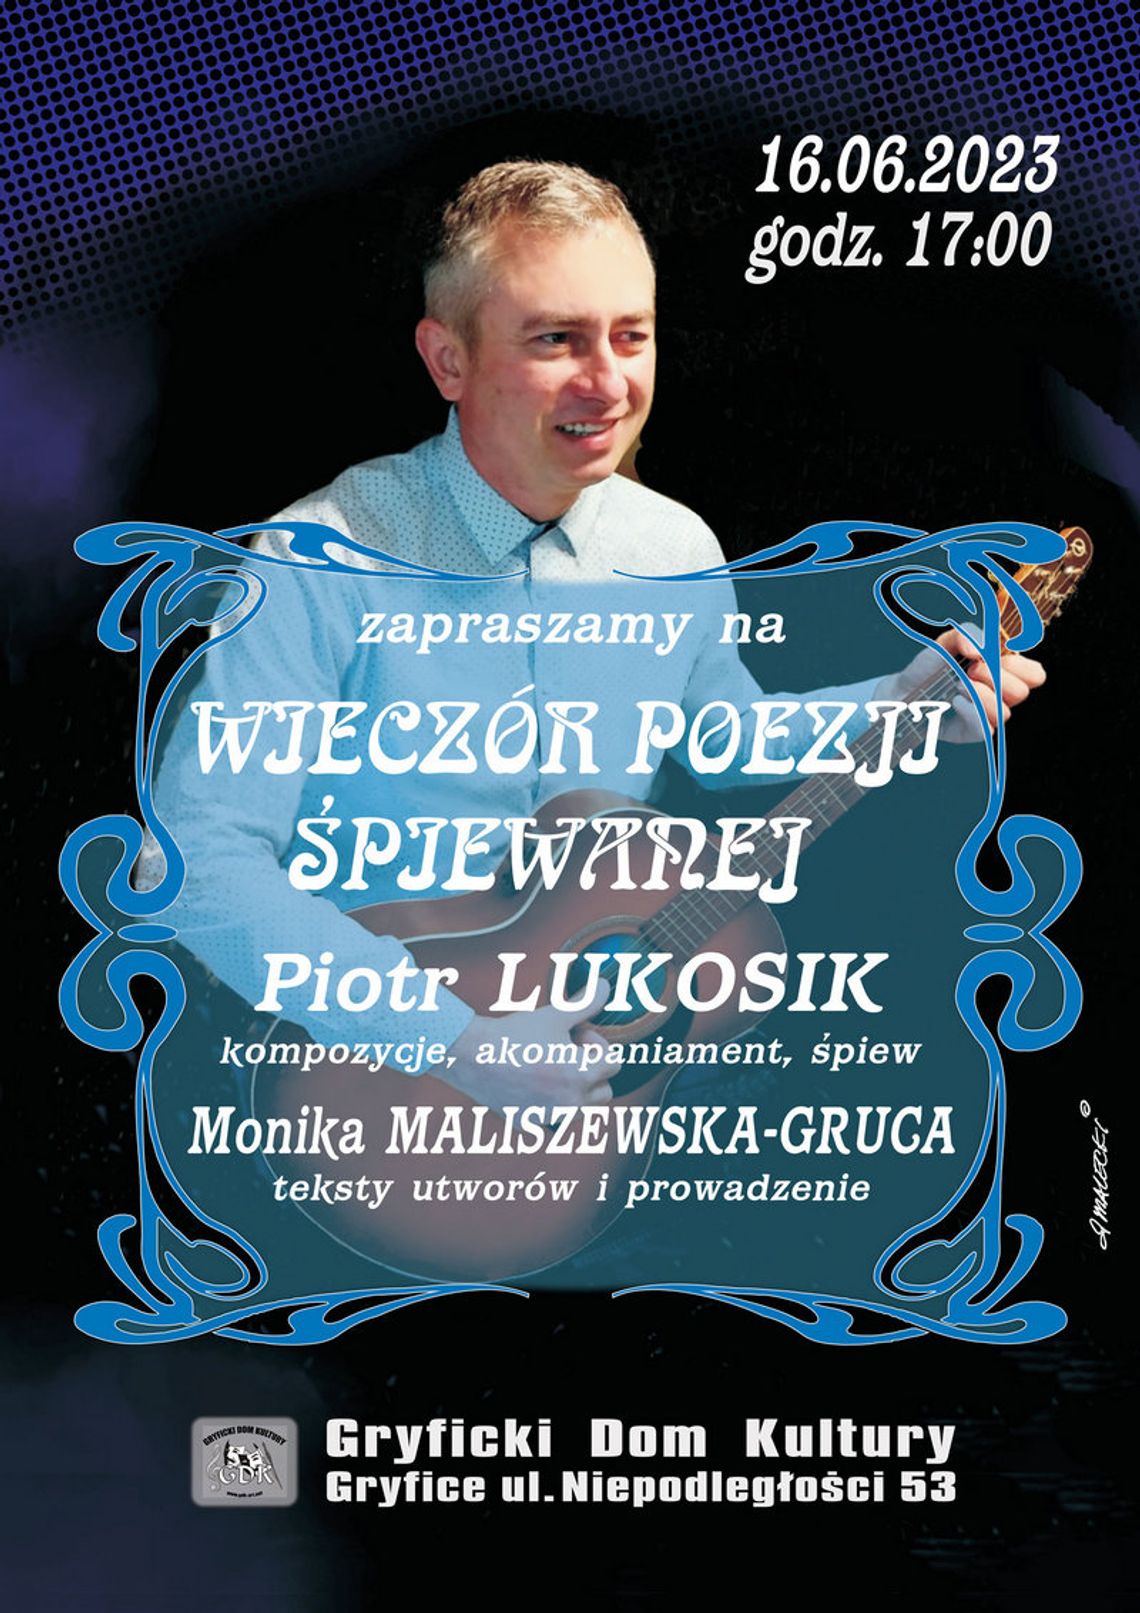 GDK Zaprasza: koncert poezji śpiewanej w wykonaniu Piotra Lukosika